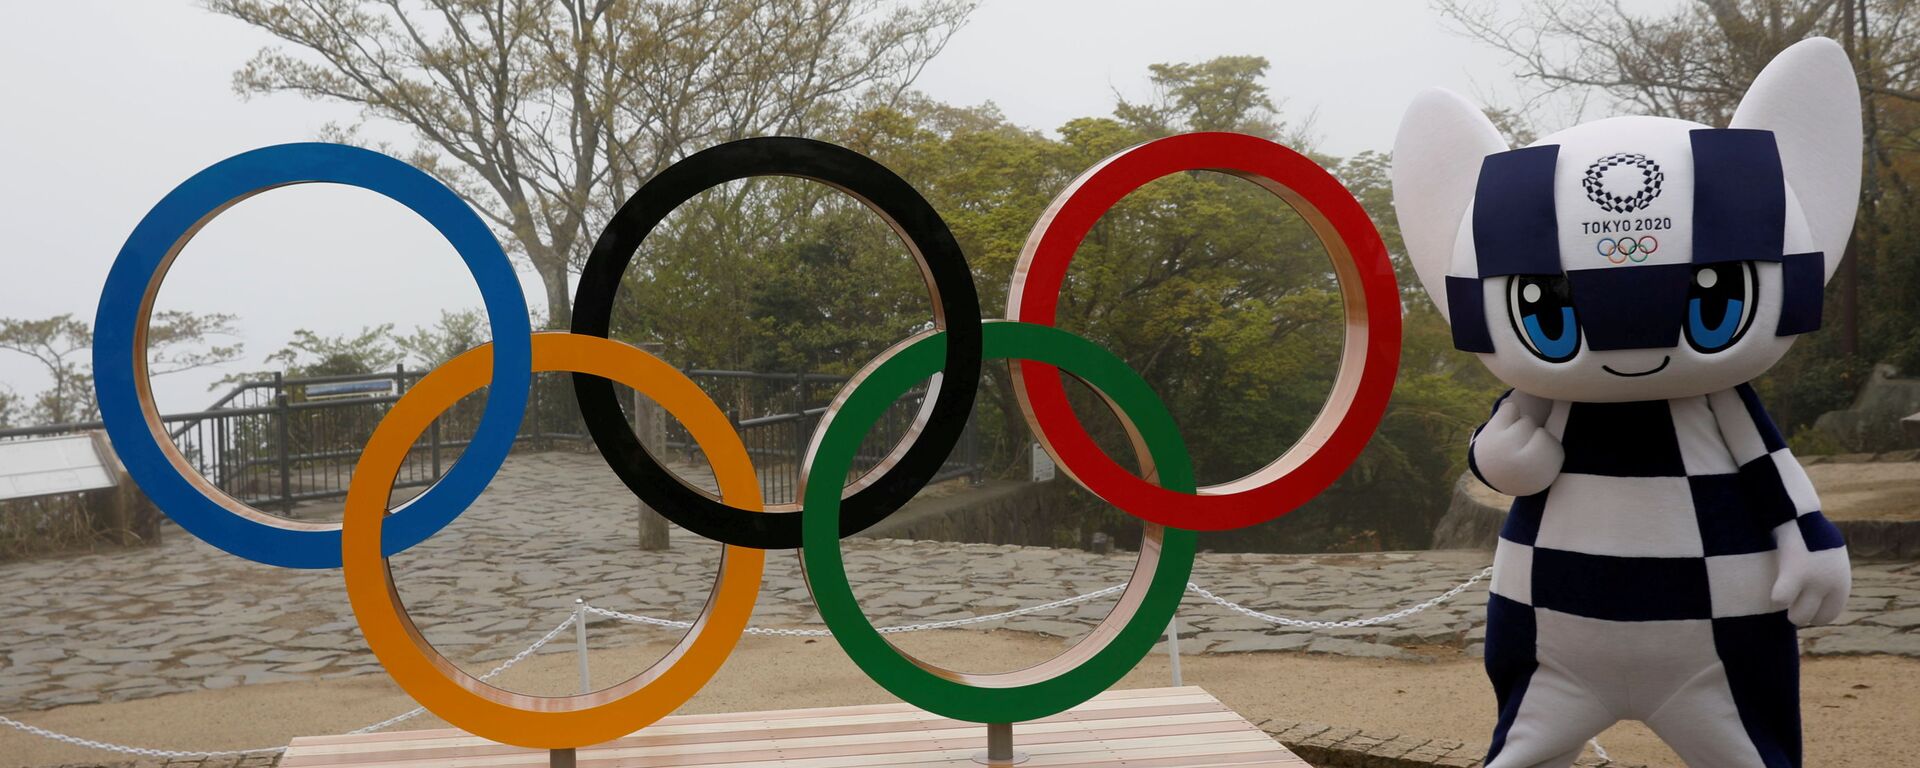 O mascote dos Jogos Olímpicos de Tóquio, Miraitowa, posa ao lado símbolo olímpico, em Tóquio, no Japão, no dia 14 de abril de 2021 - Sputnik Brasil, 1920, 11.05.2021